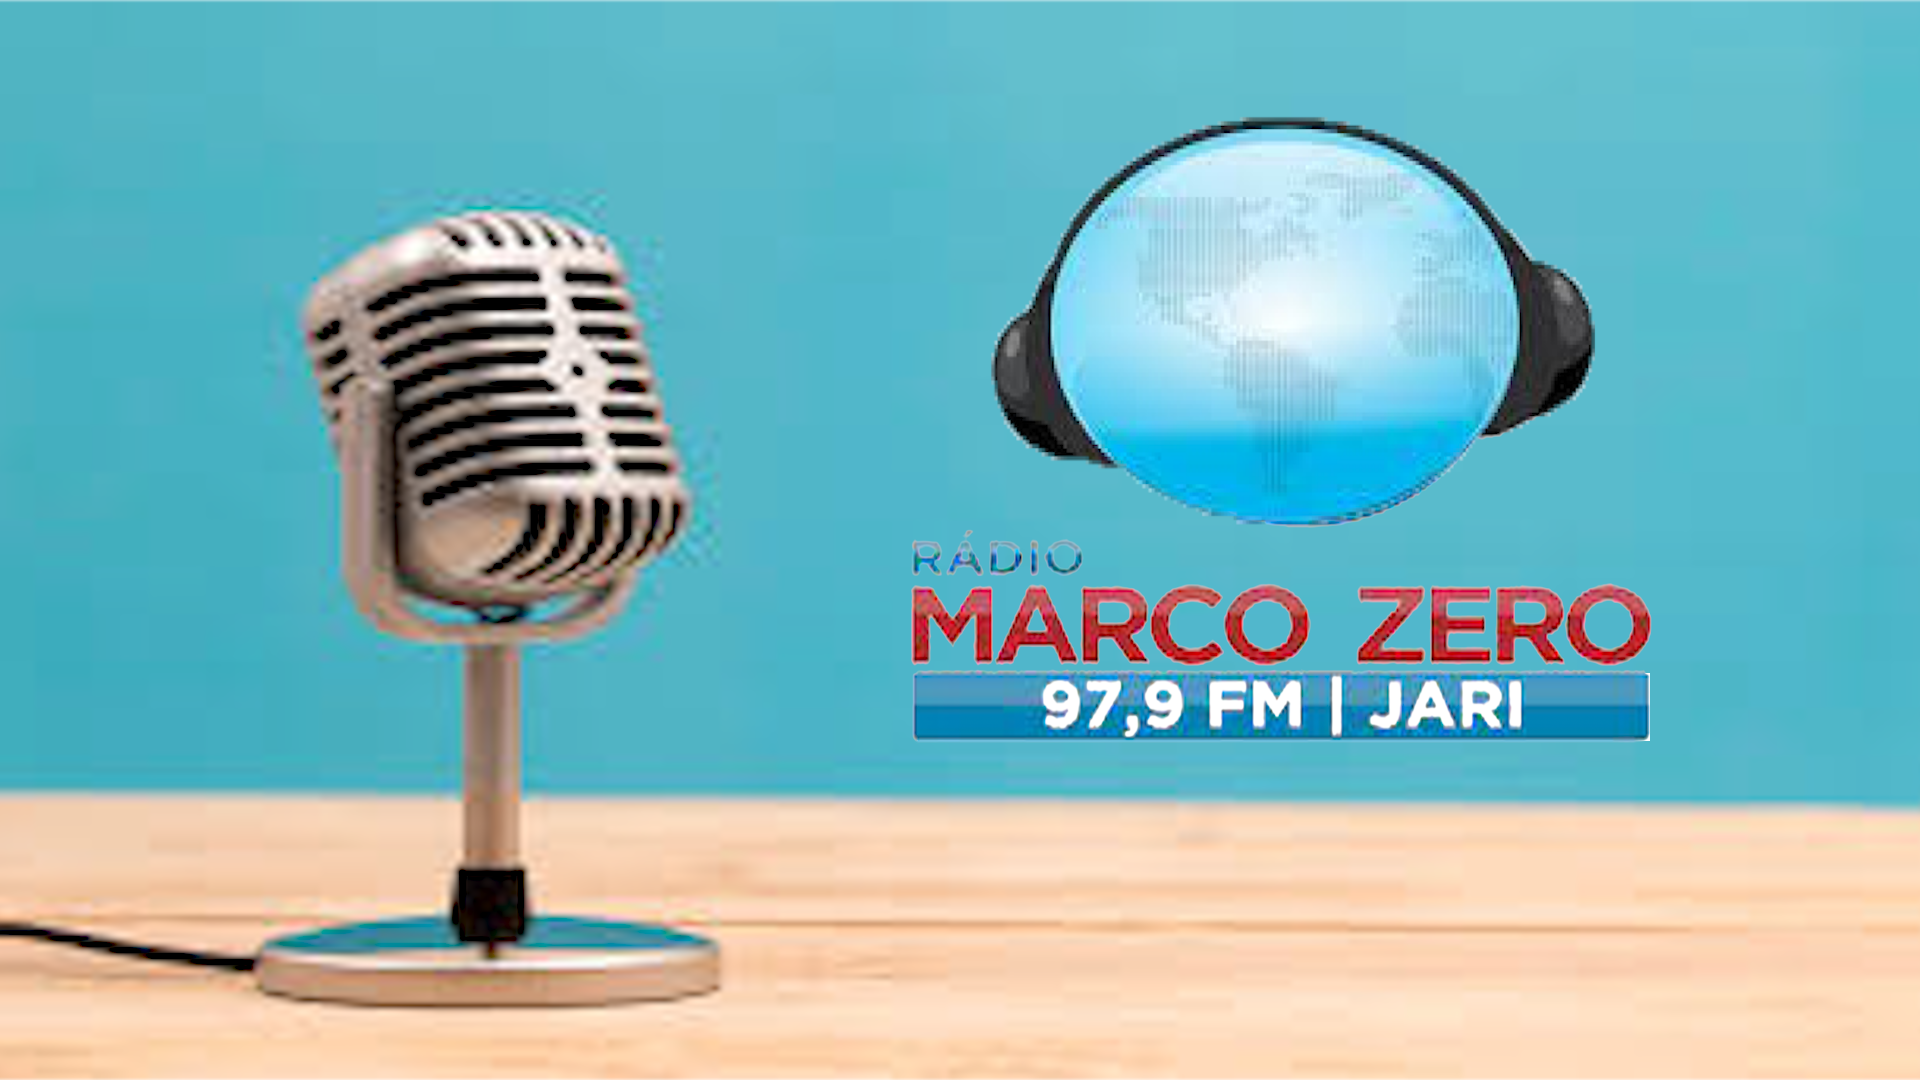 Publicidade Radio Marco Zero Jarí